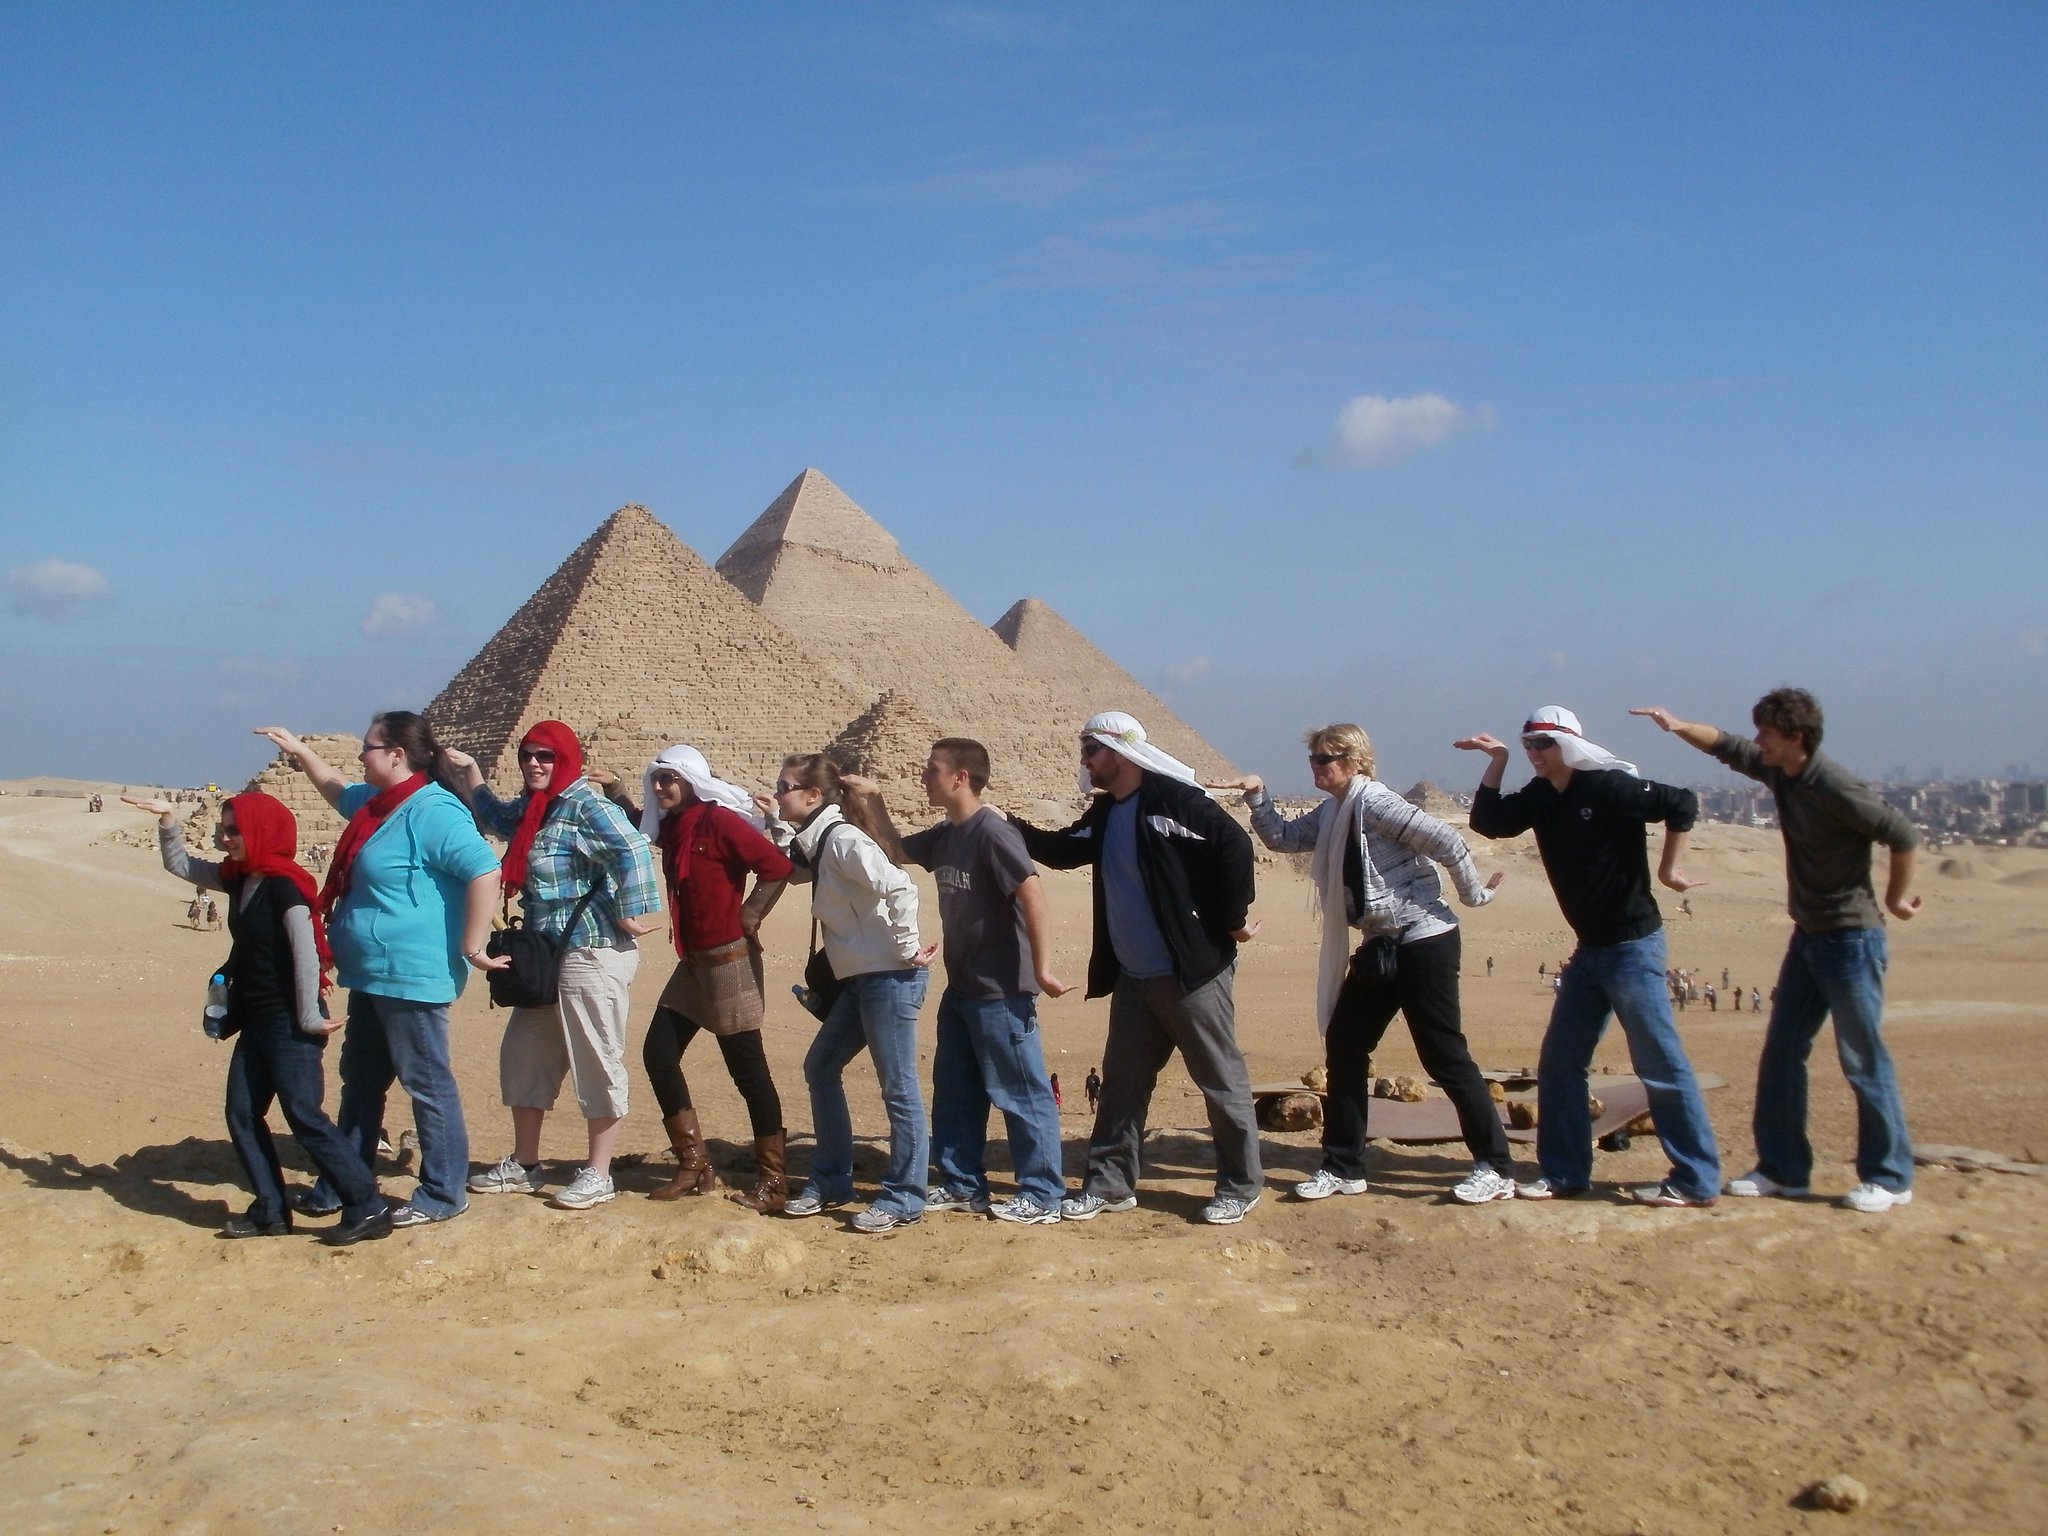 Pyramids - Egypt